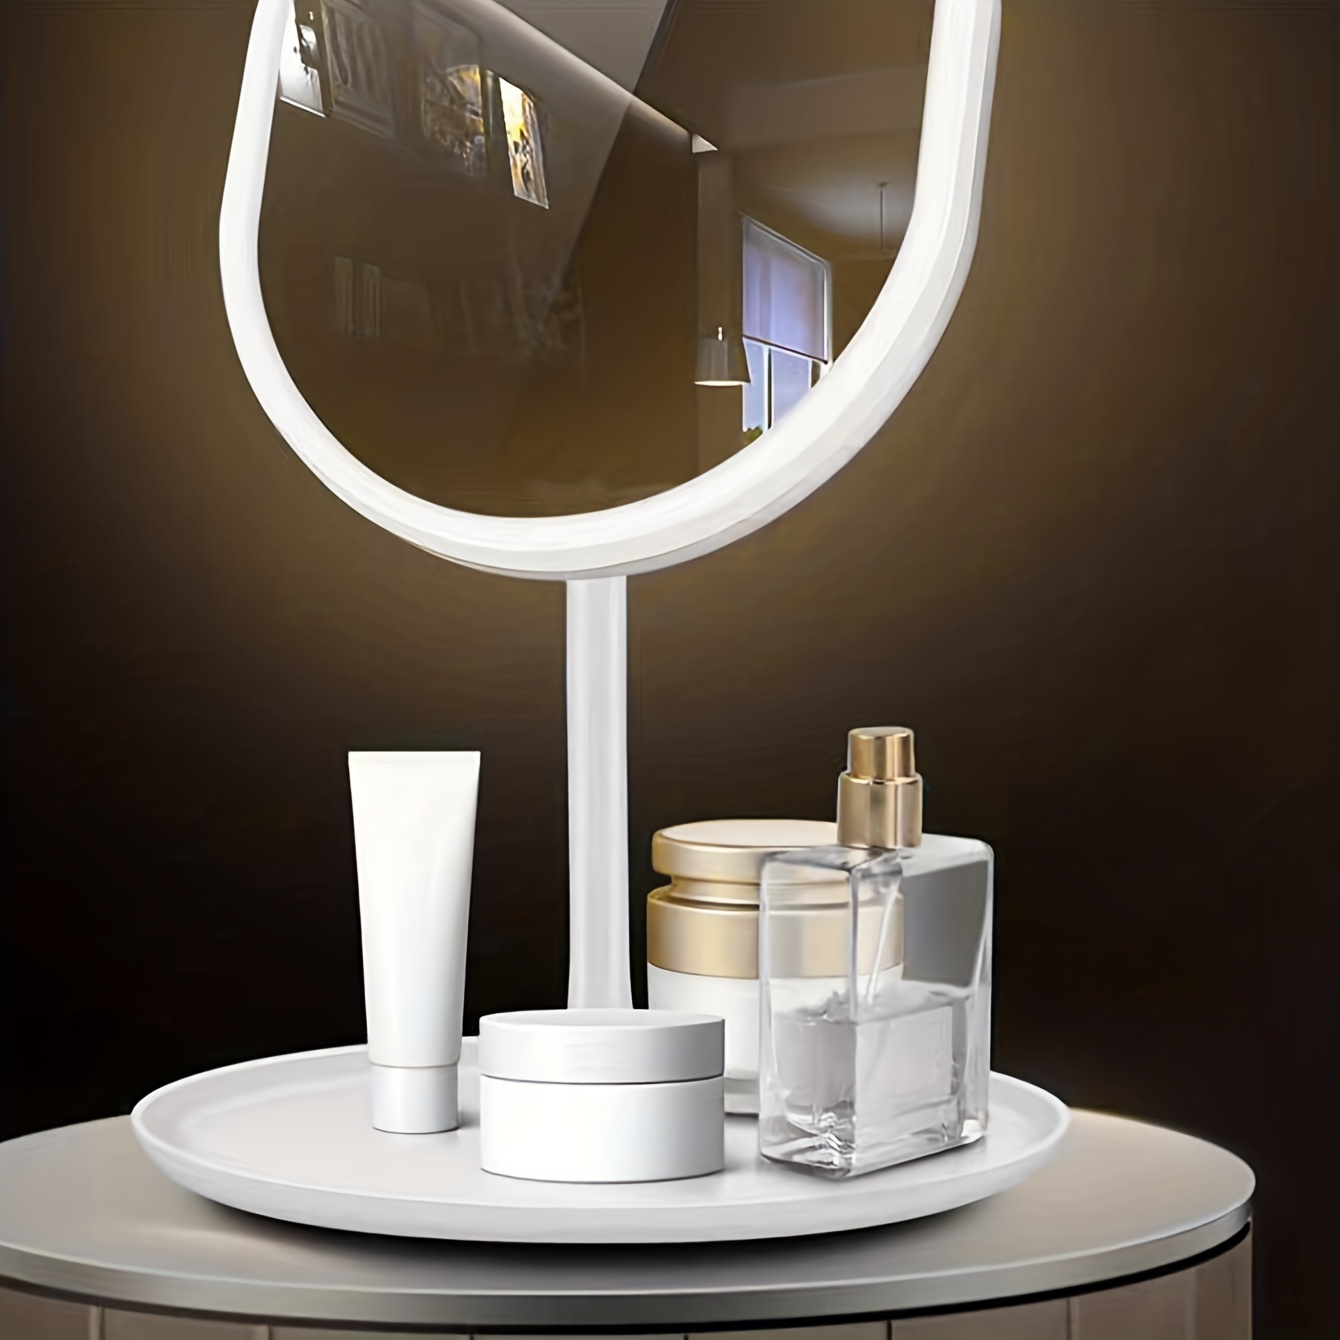 KSCD Miroir de maquillage avec lumières, miroir de courtoisie rechargeable  à LED, miroir de courtoisie portable à écran tactile pour table ou voyage,  rose/blanc 